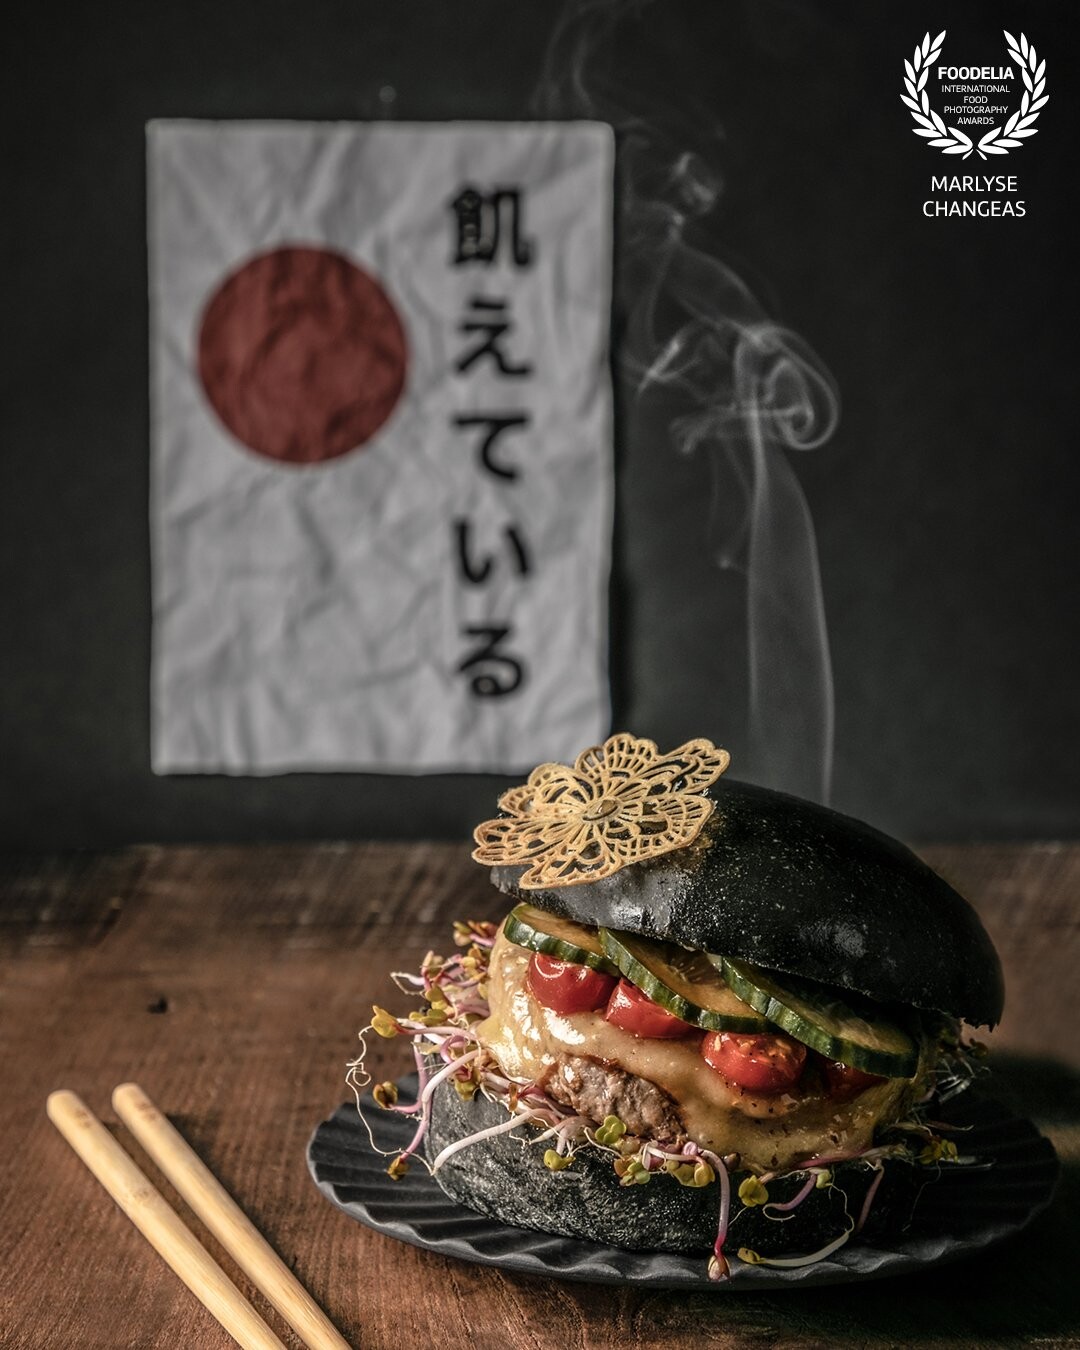 Cette photo à été réalisée pour un concours culinaire. Le thème du concours est la street food et le cuisinier a décidé De mettre en avant la cuisine japonaise.<br />
Je souhaitais mettre en avant la texture du burger par la lumière, un petit clin d’œil à l’arrière avec l’écriture en japonais du nom de son entreprise. <br />
Le mouvement de la fumée nous donne l’impression que le burger est prêt à être dégusté.